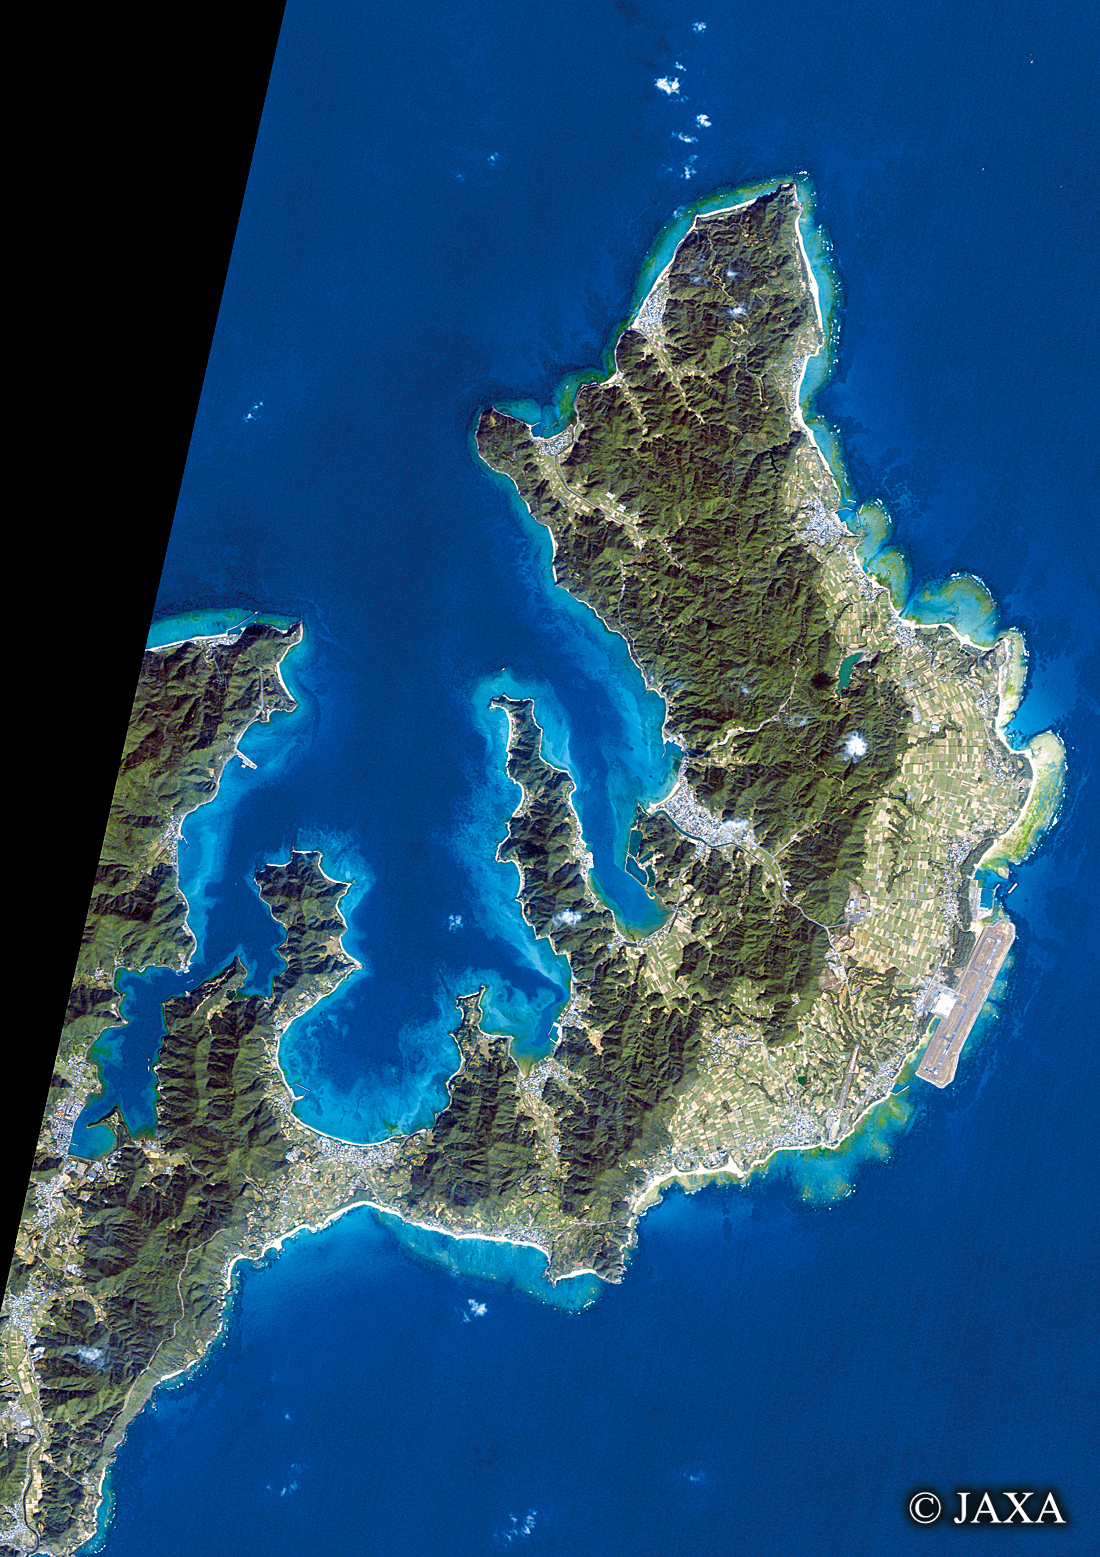 だいちから見た日本の都市 奄美空港周辺:衛星画像